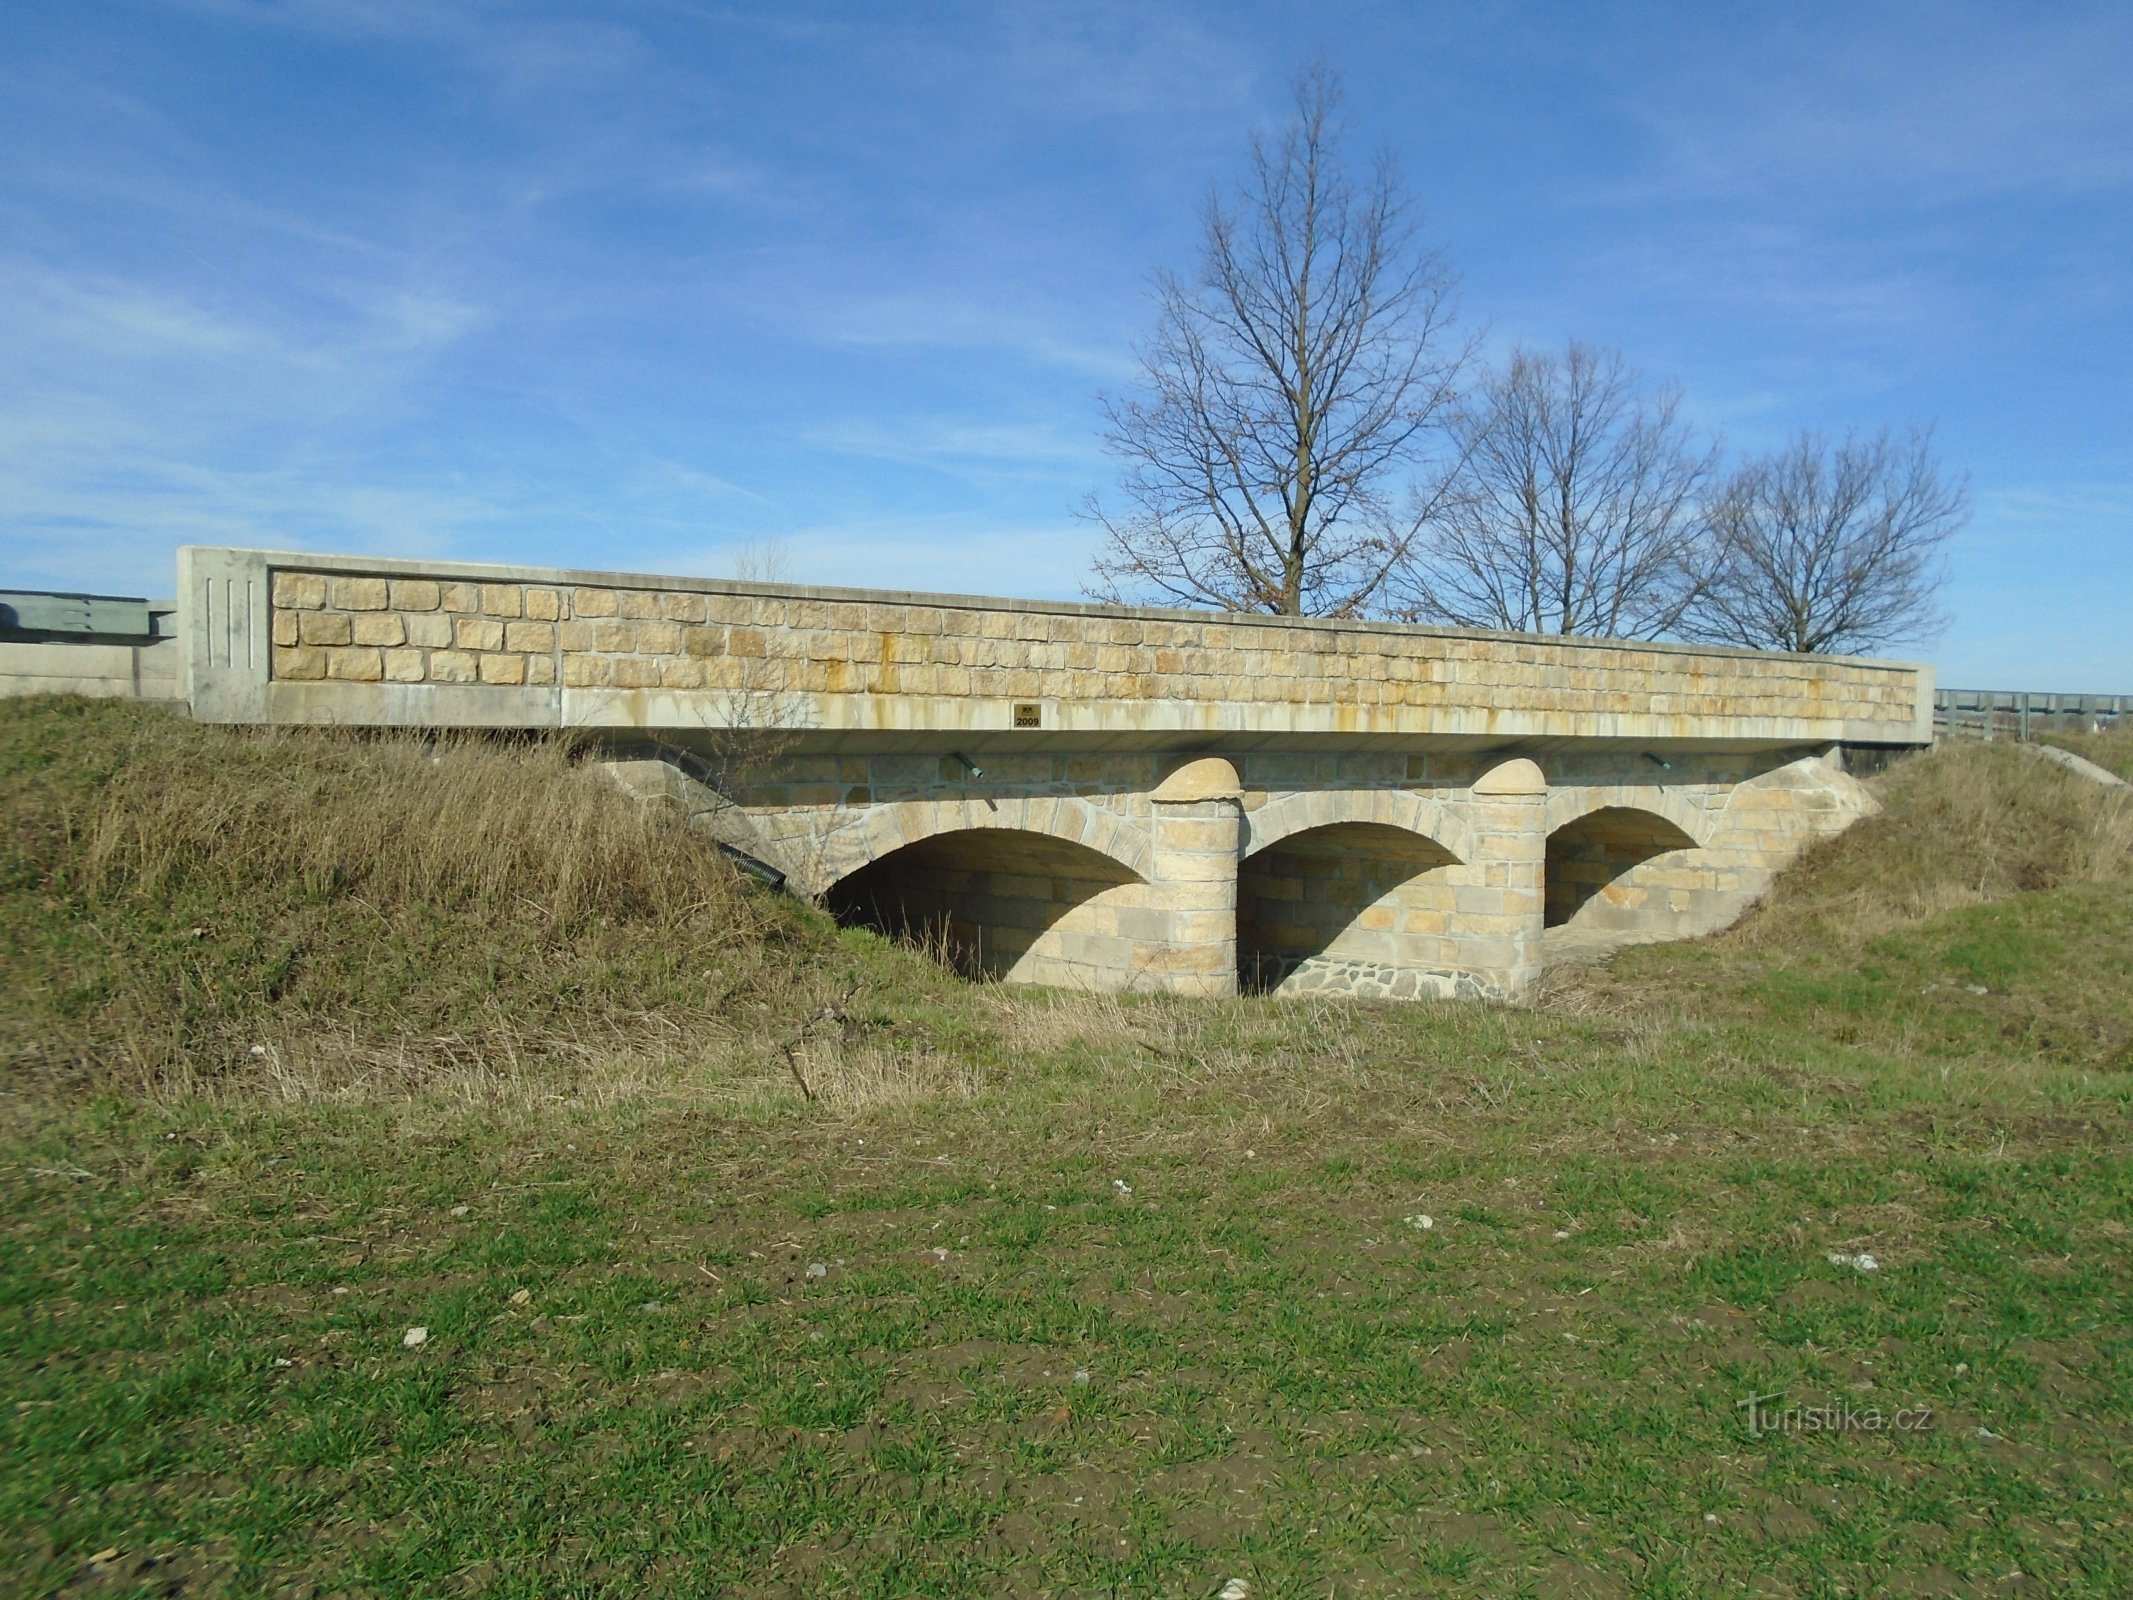 Охраняемый памятником мост (Богумилеч)